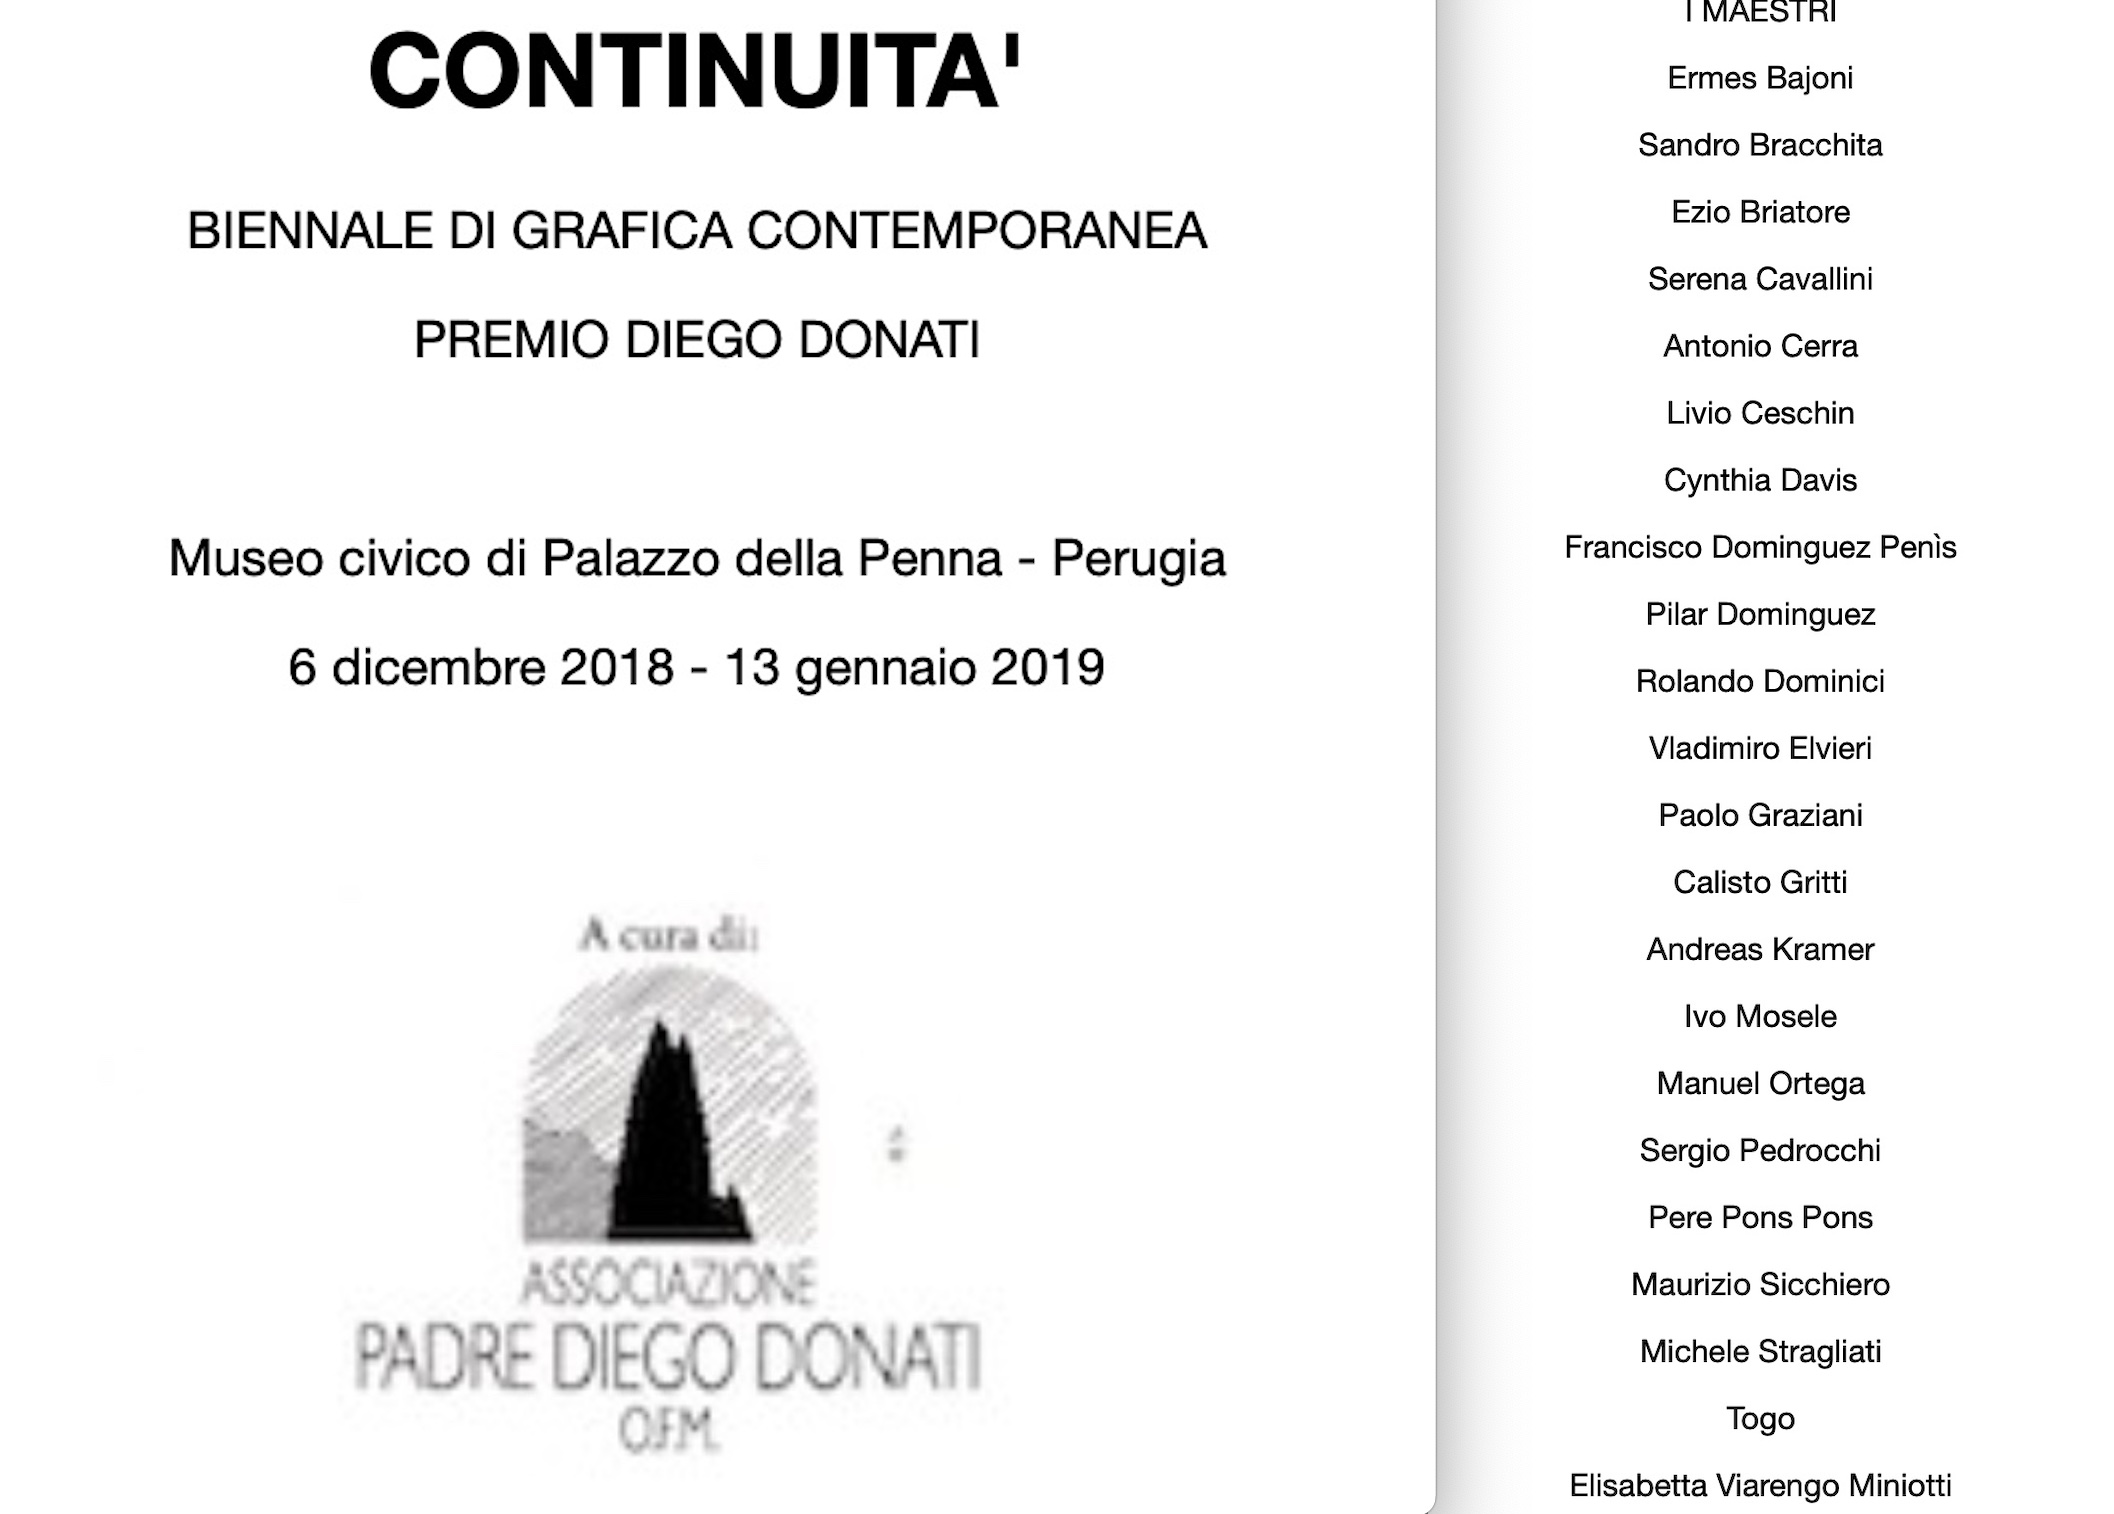 Continuita Premio Diego Donati